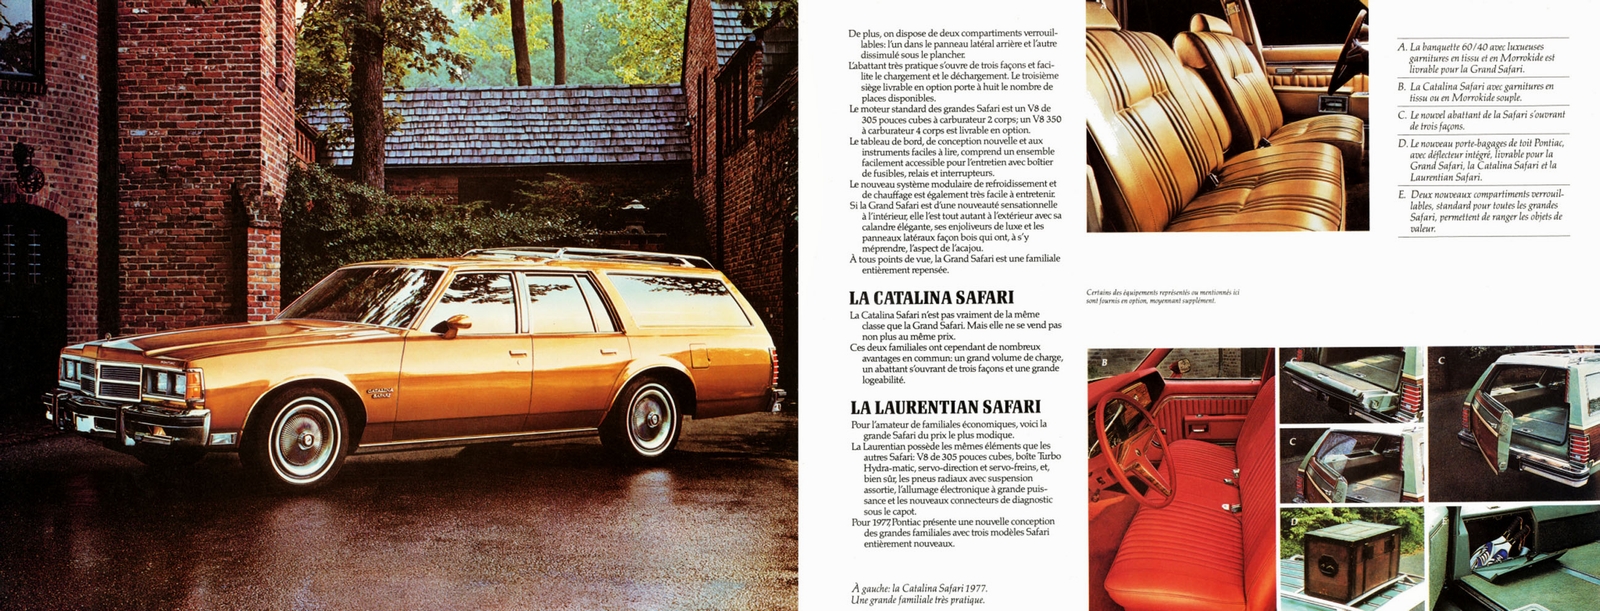 n_1977 Pontiac Full Size (Fr)-12-13.jpg